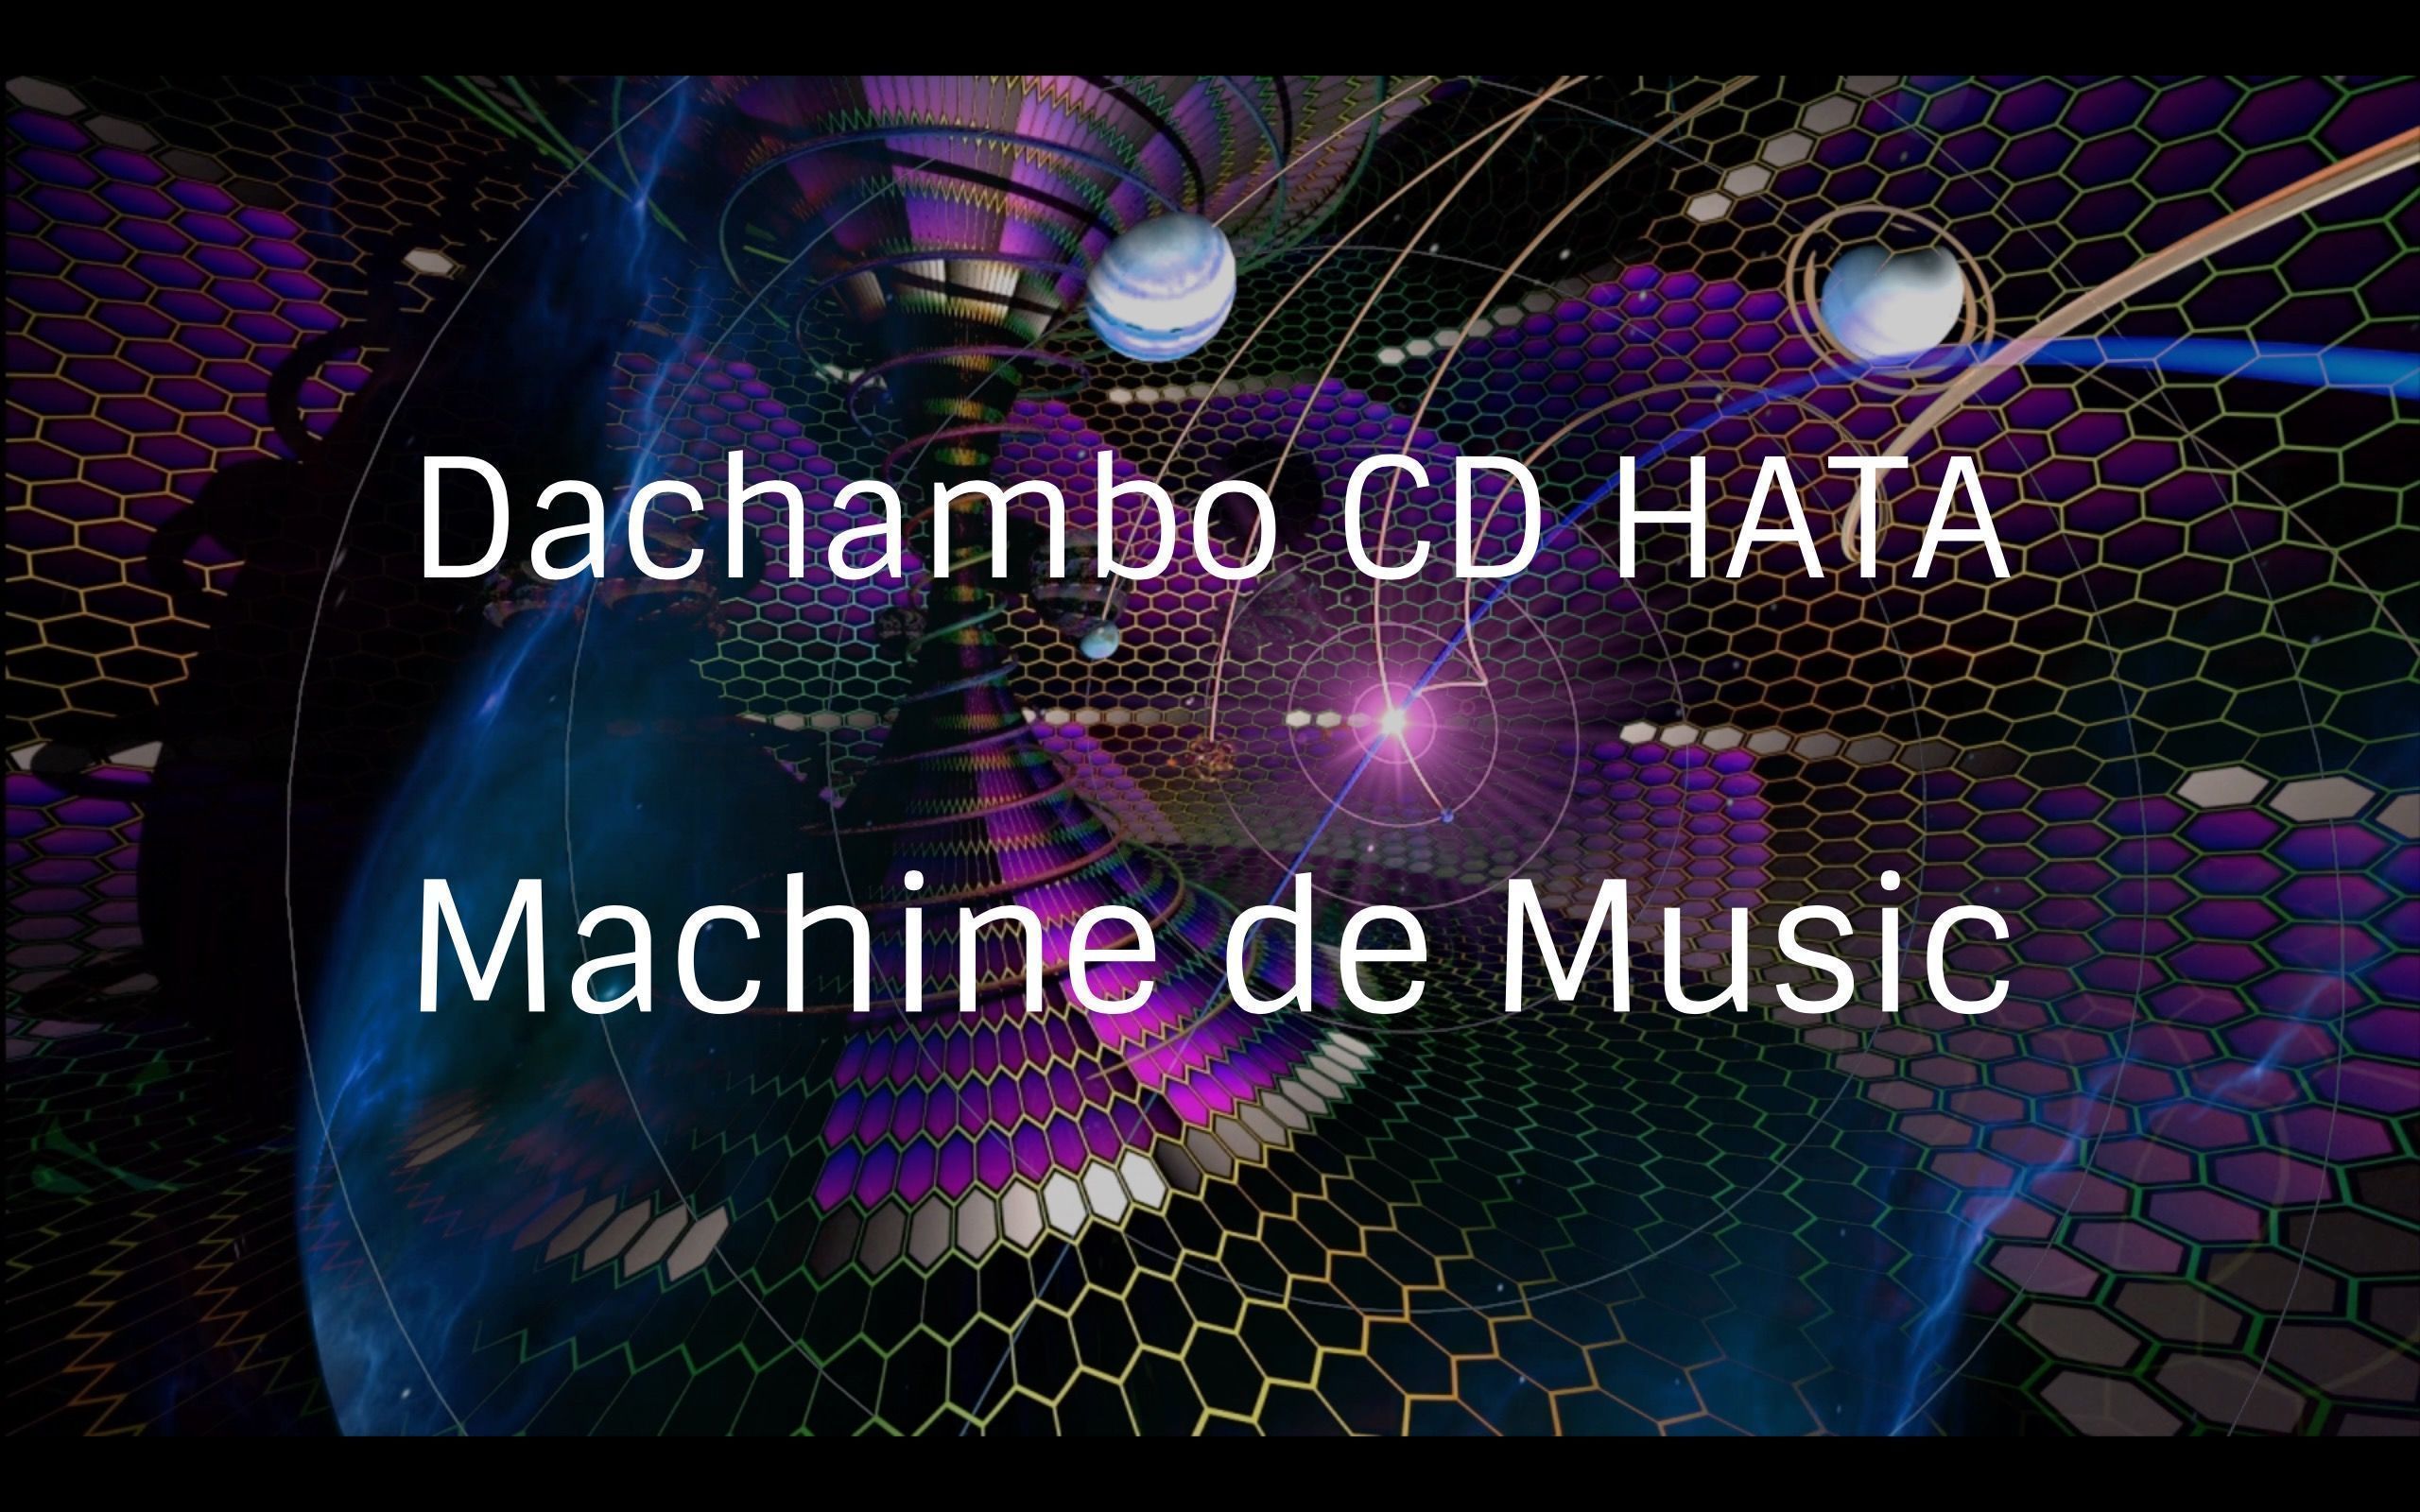 Dachambo CD HATAのMachine de Music コラムVol.68 コロナのマーチ
